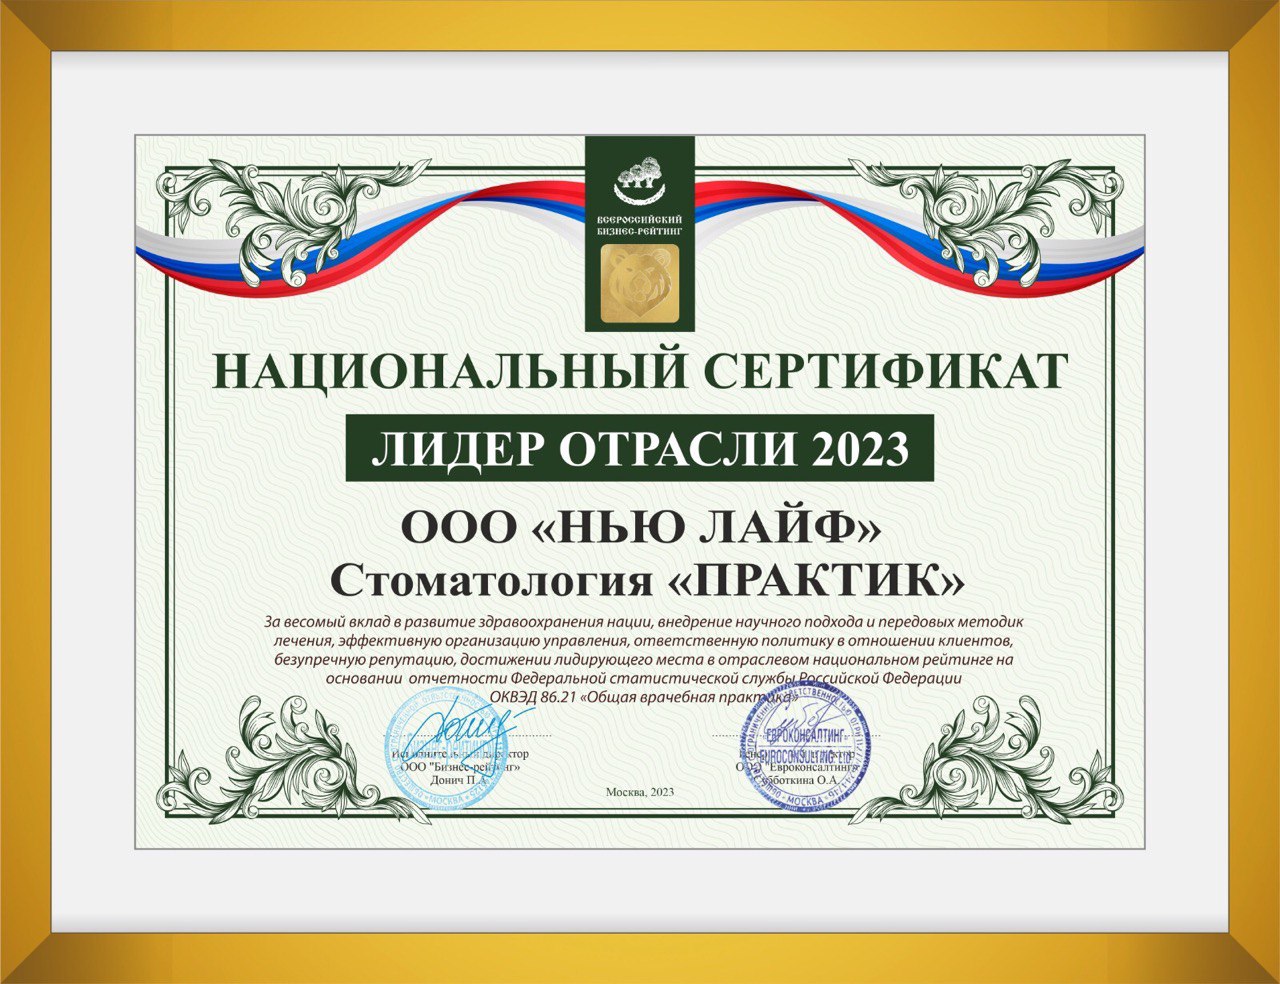 Национальный сертификат «Лидер отрасли» 2023